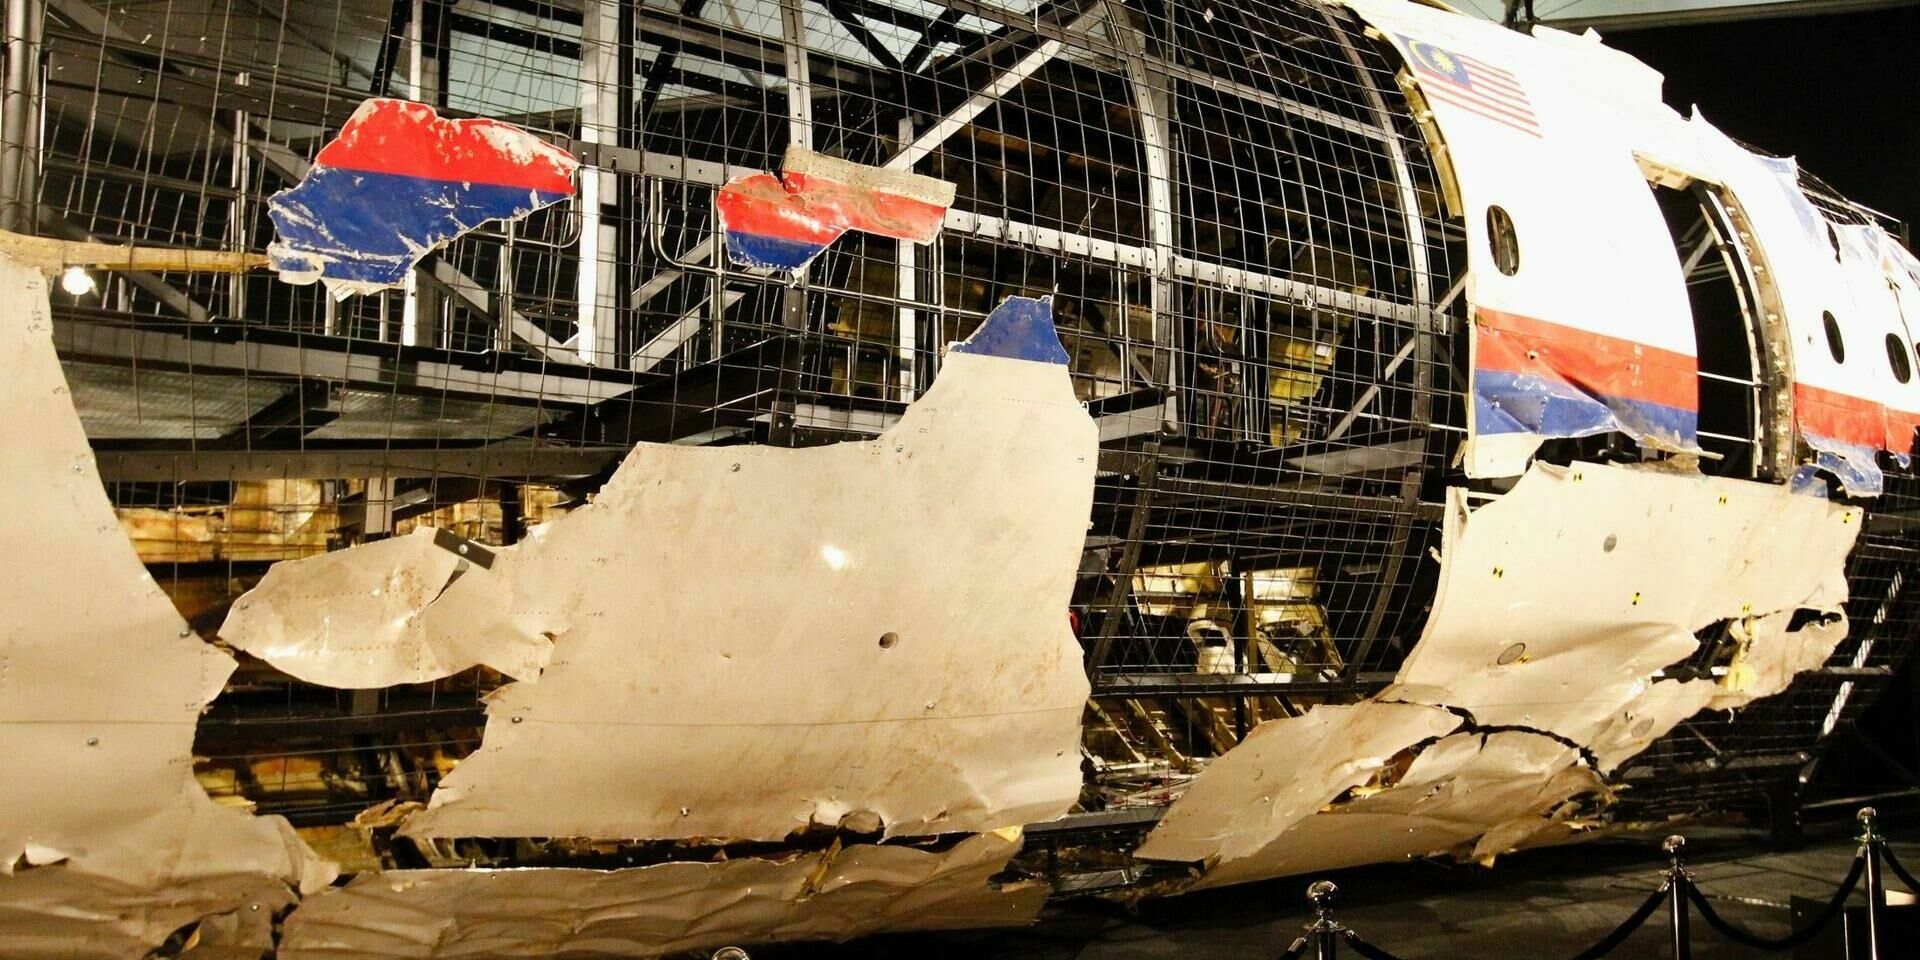 Прокуратура Нидерландов приступила к оглашению обвинения по делу о MH17